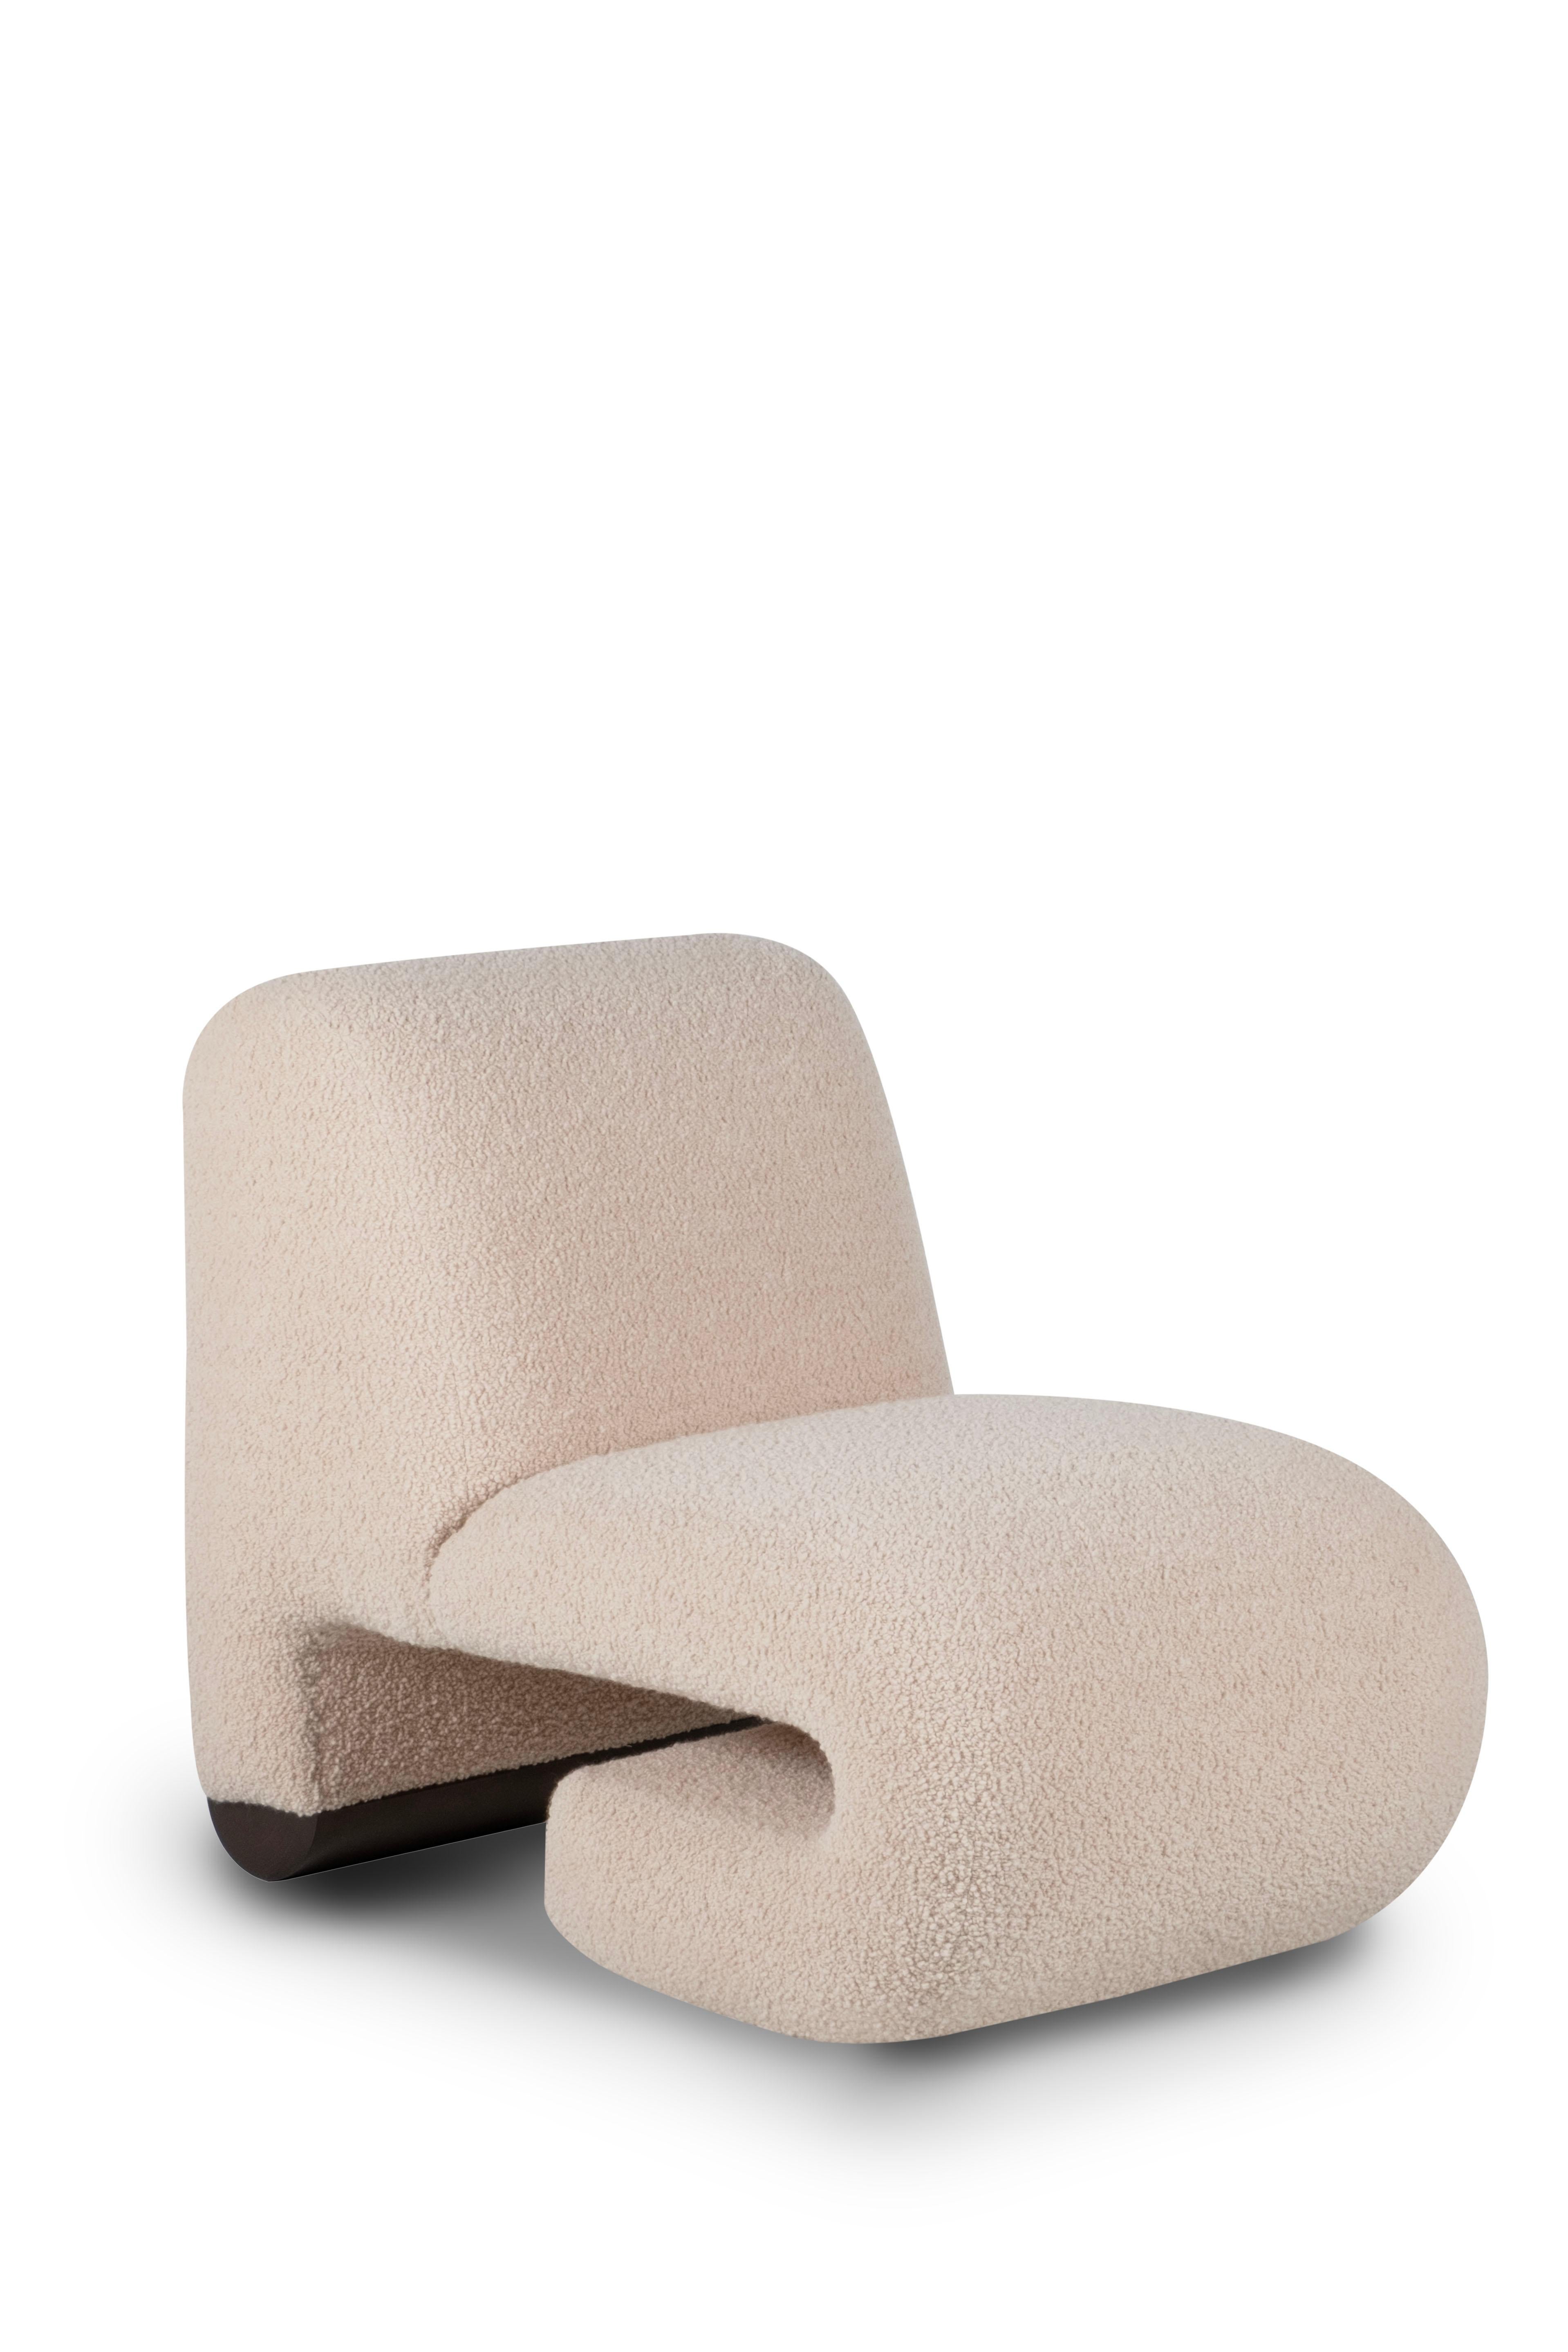 Moderne Modernity T50 Lounge Chair, Dedar Wool Bouclé, Handmade in Portugal by Greenapple en vente